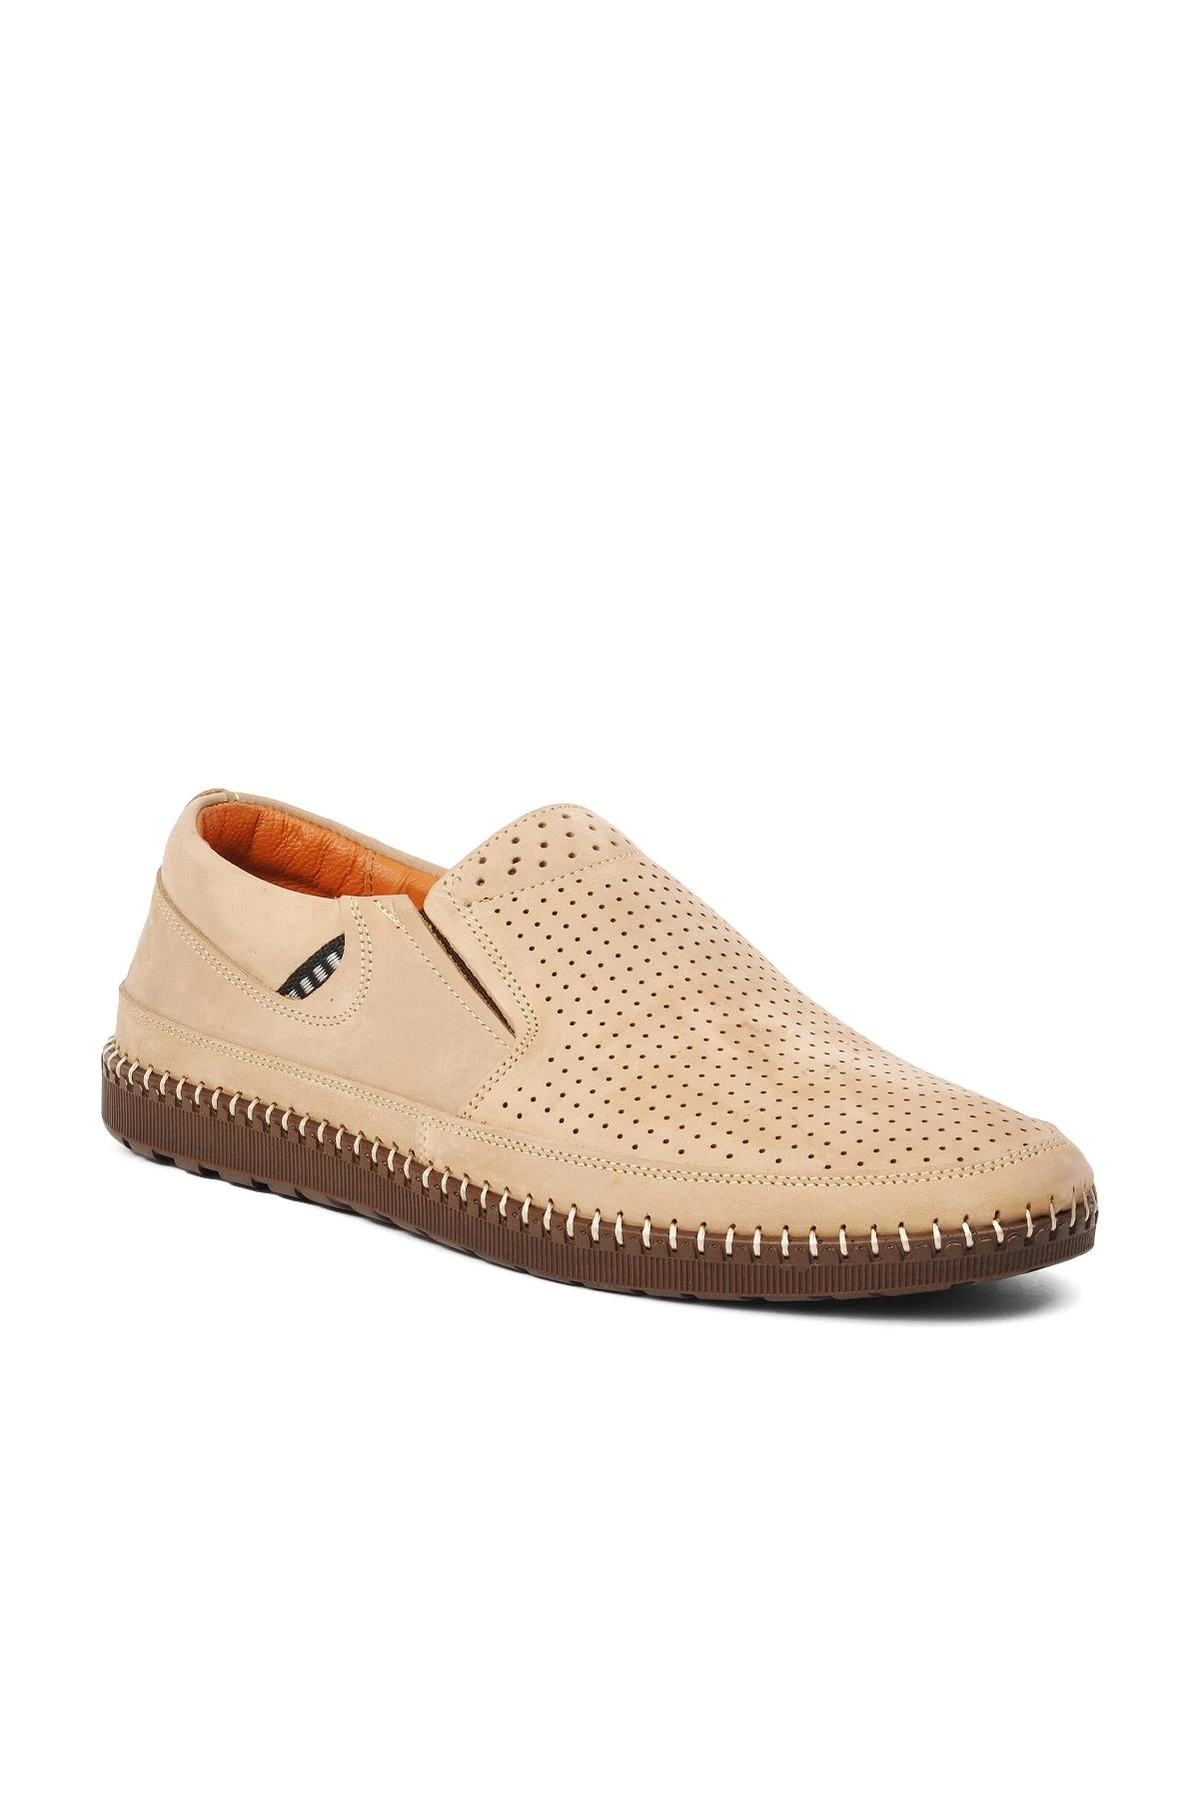 AyakHapp772-Chaussures décontractées en cuir véritable beige NuSO k pour homme